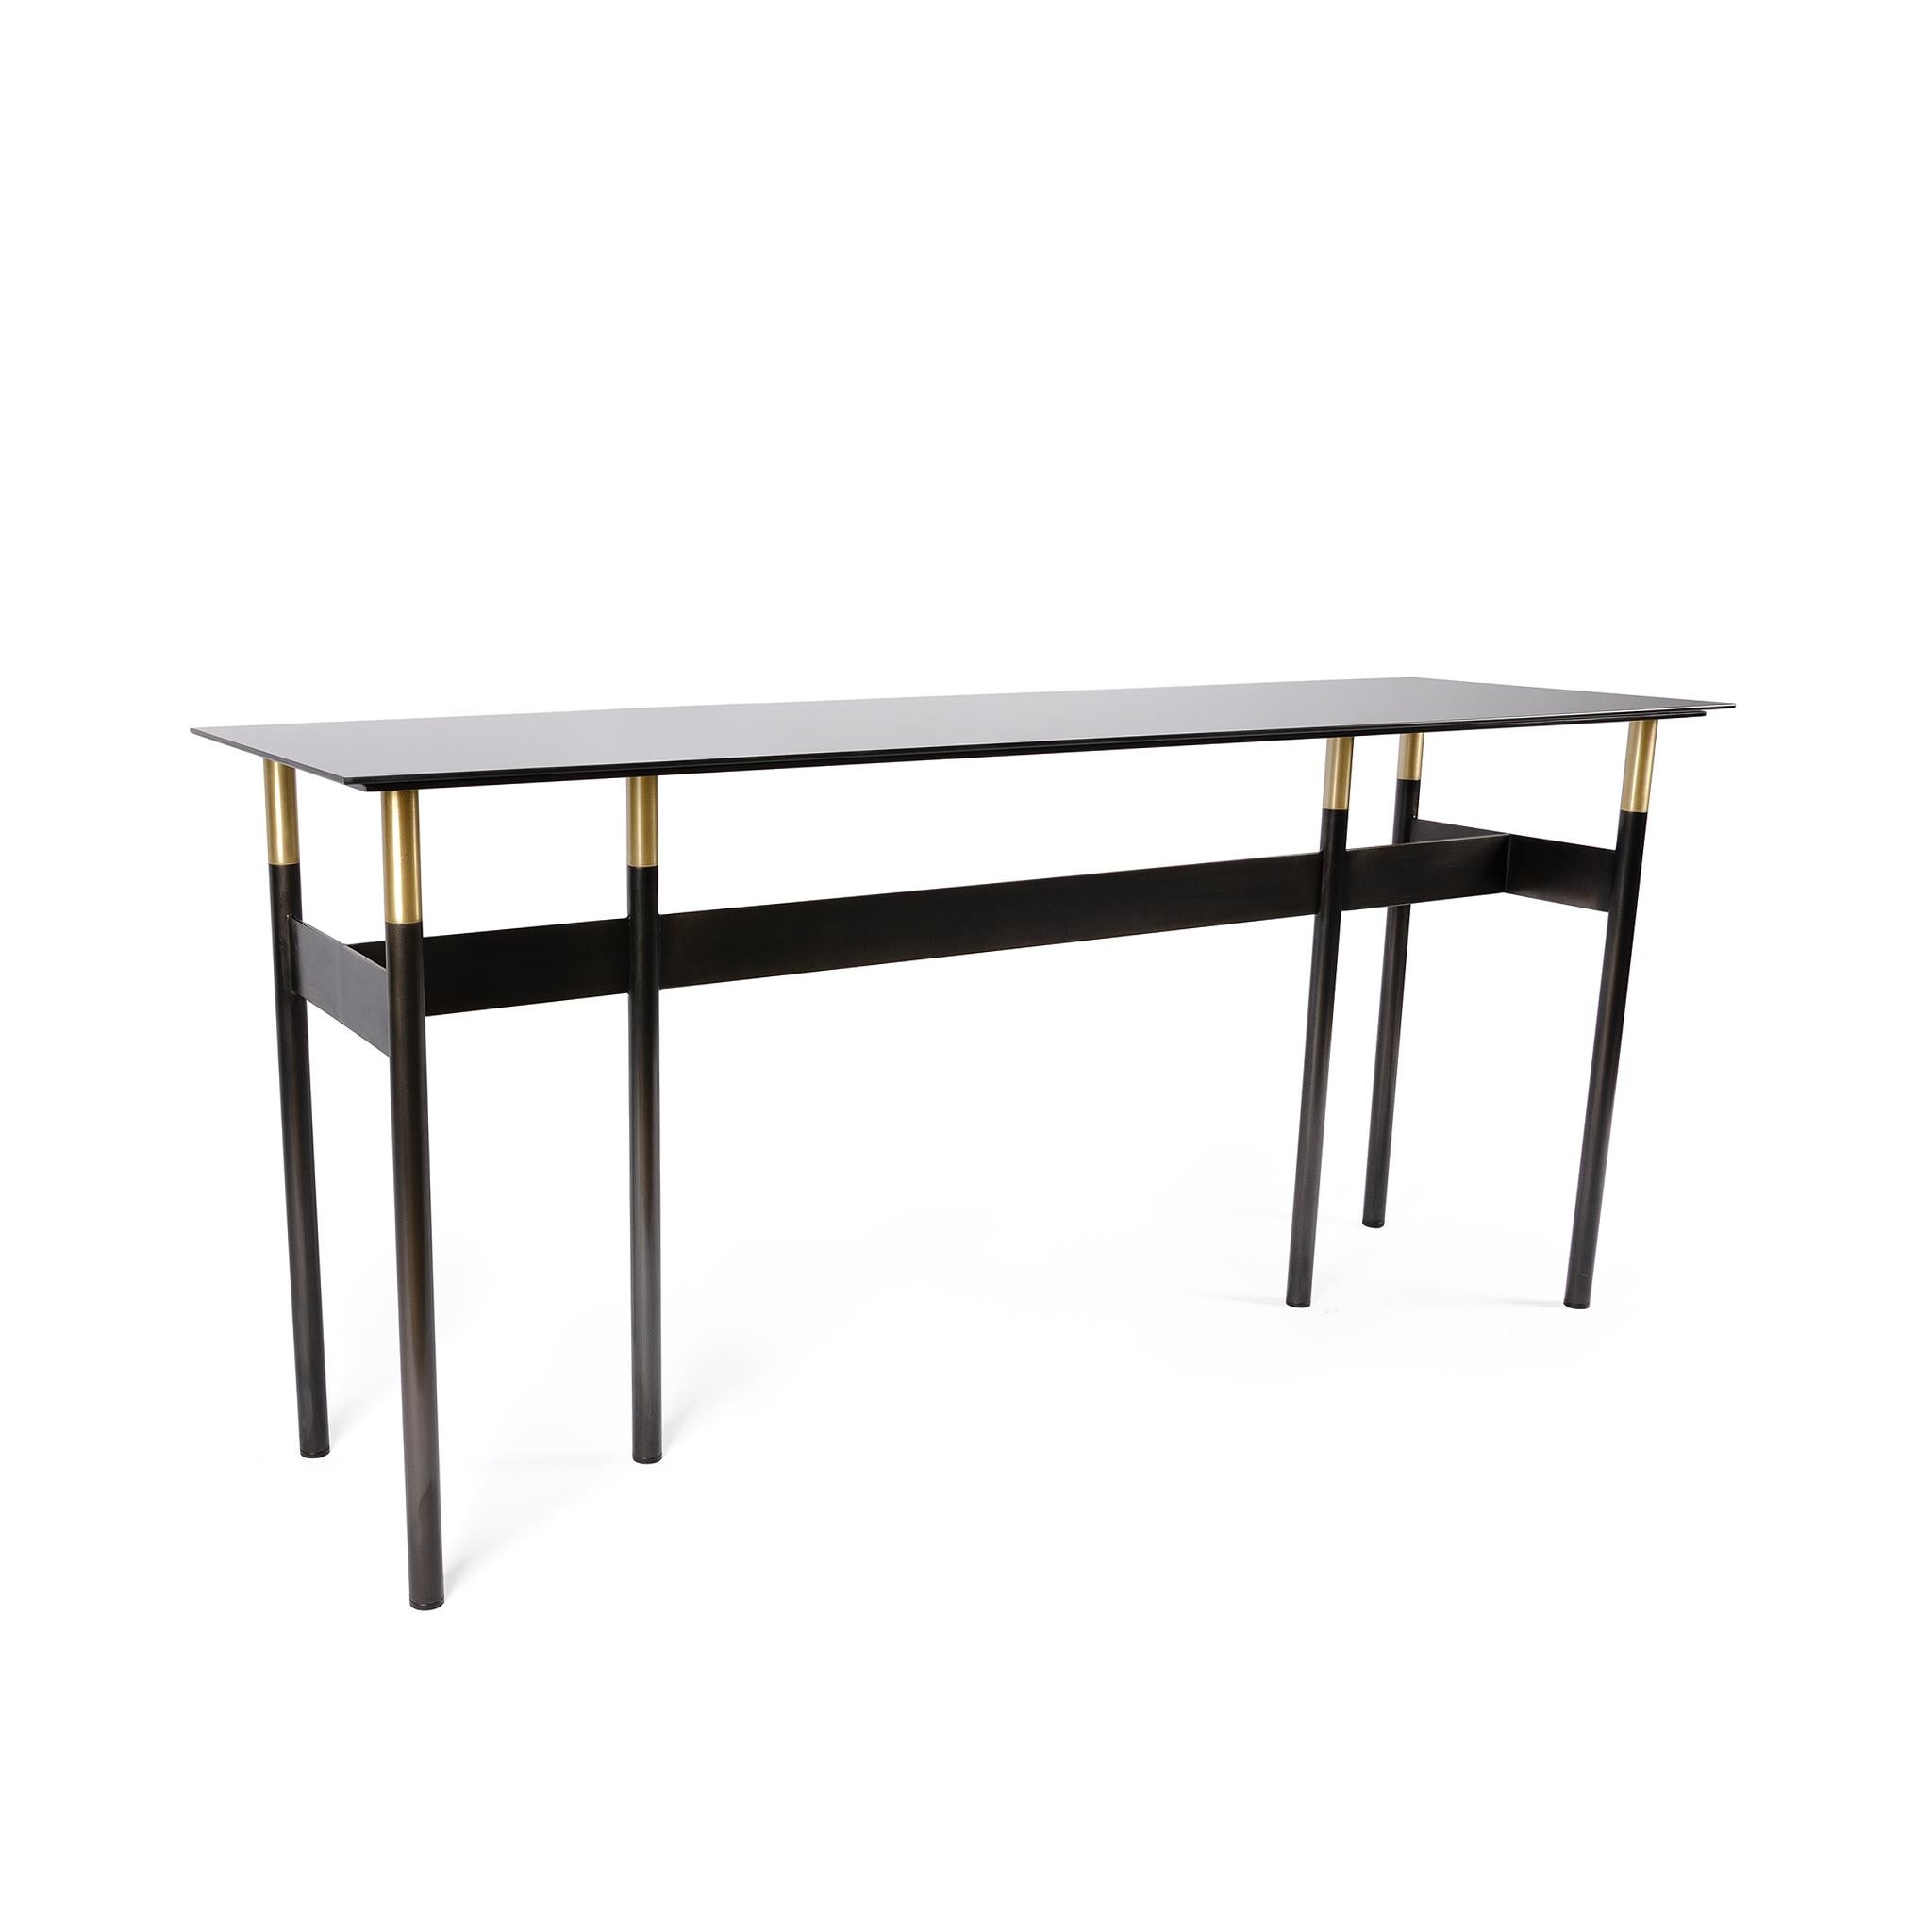 Der Lank-Tisch ist ein rechteckiger Konsolentisch mit schlichter Eleganz. Die dunklen Töne des linearen, handgeschwärzten Stahls und der getönten Spiegelglasplatte kontrastieren mit den hellen Messingdetails zu einem einzigartigen und raffinierten